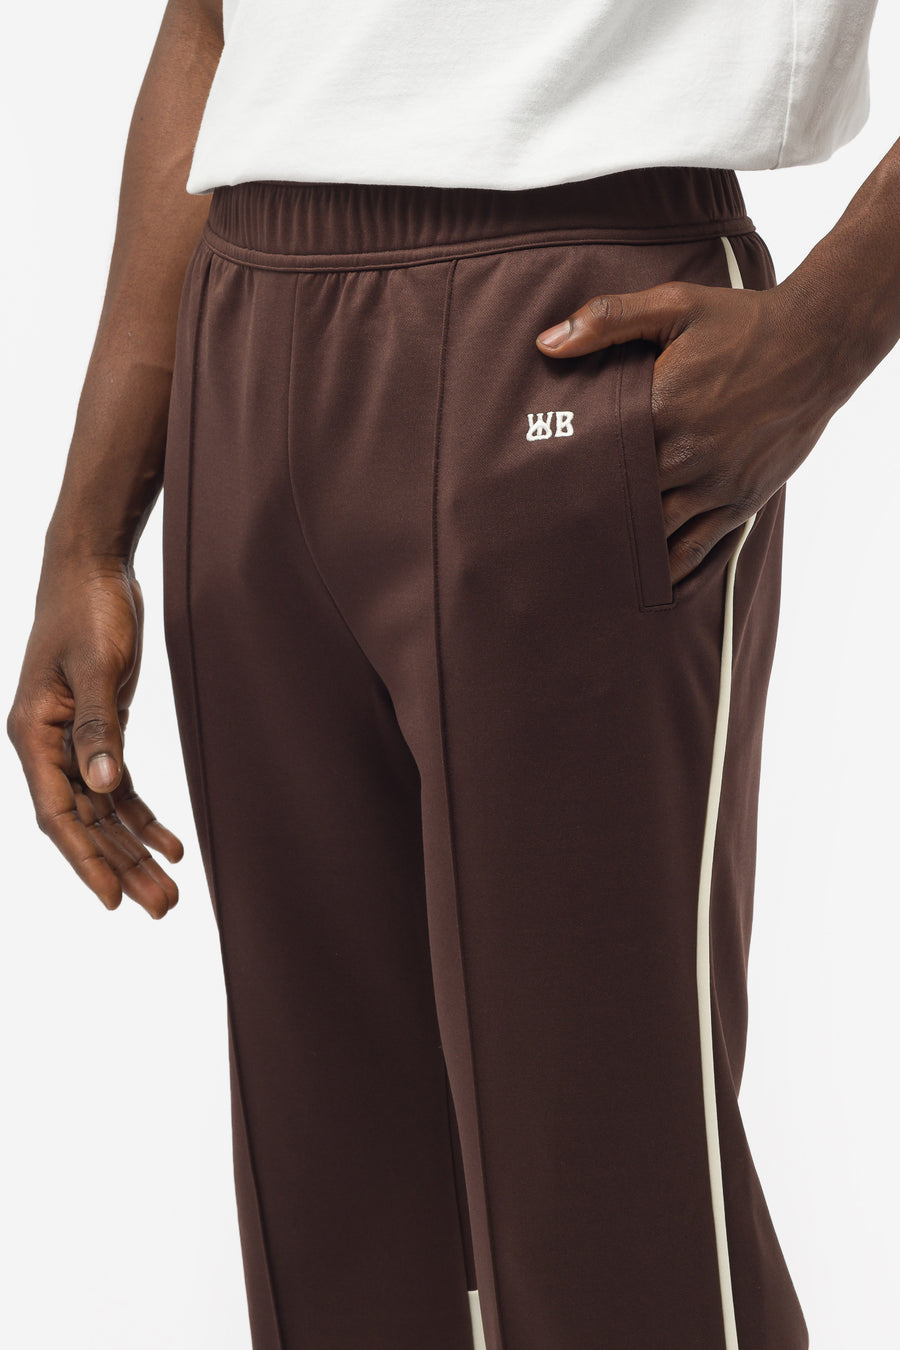 Wales Bonner - Men's Kola Track Pants in Brown/Ivory